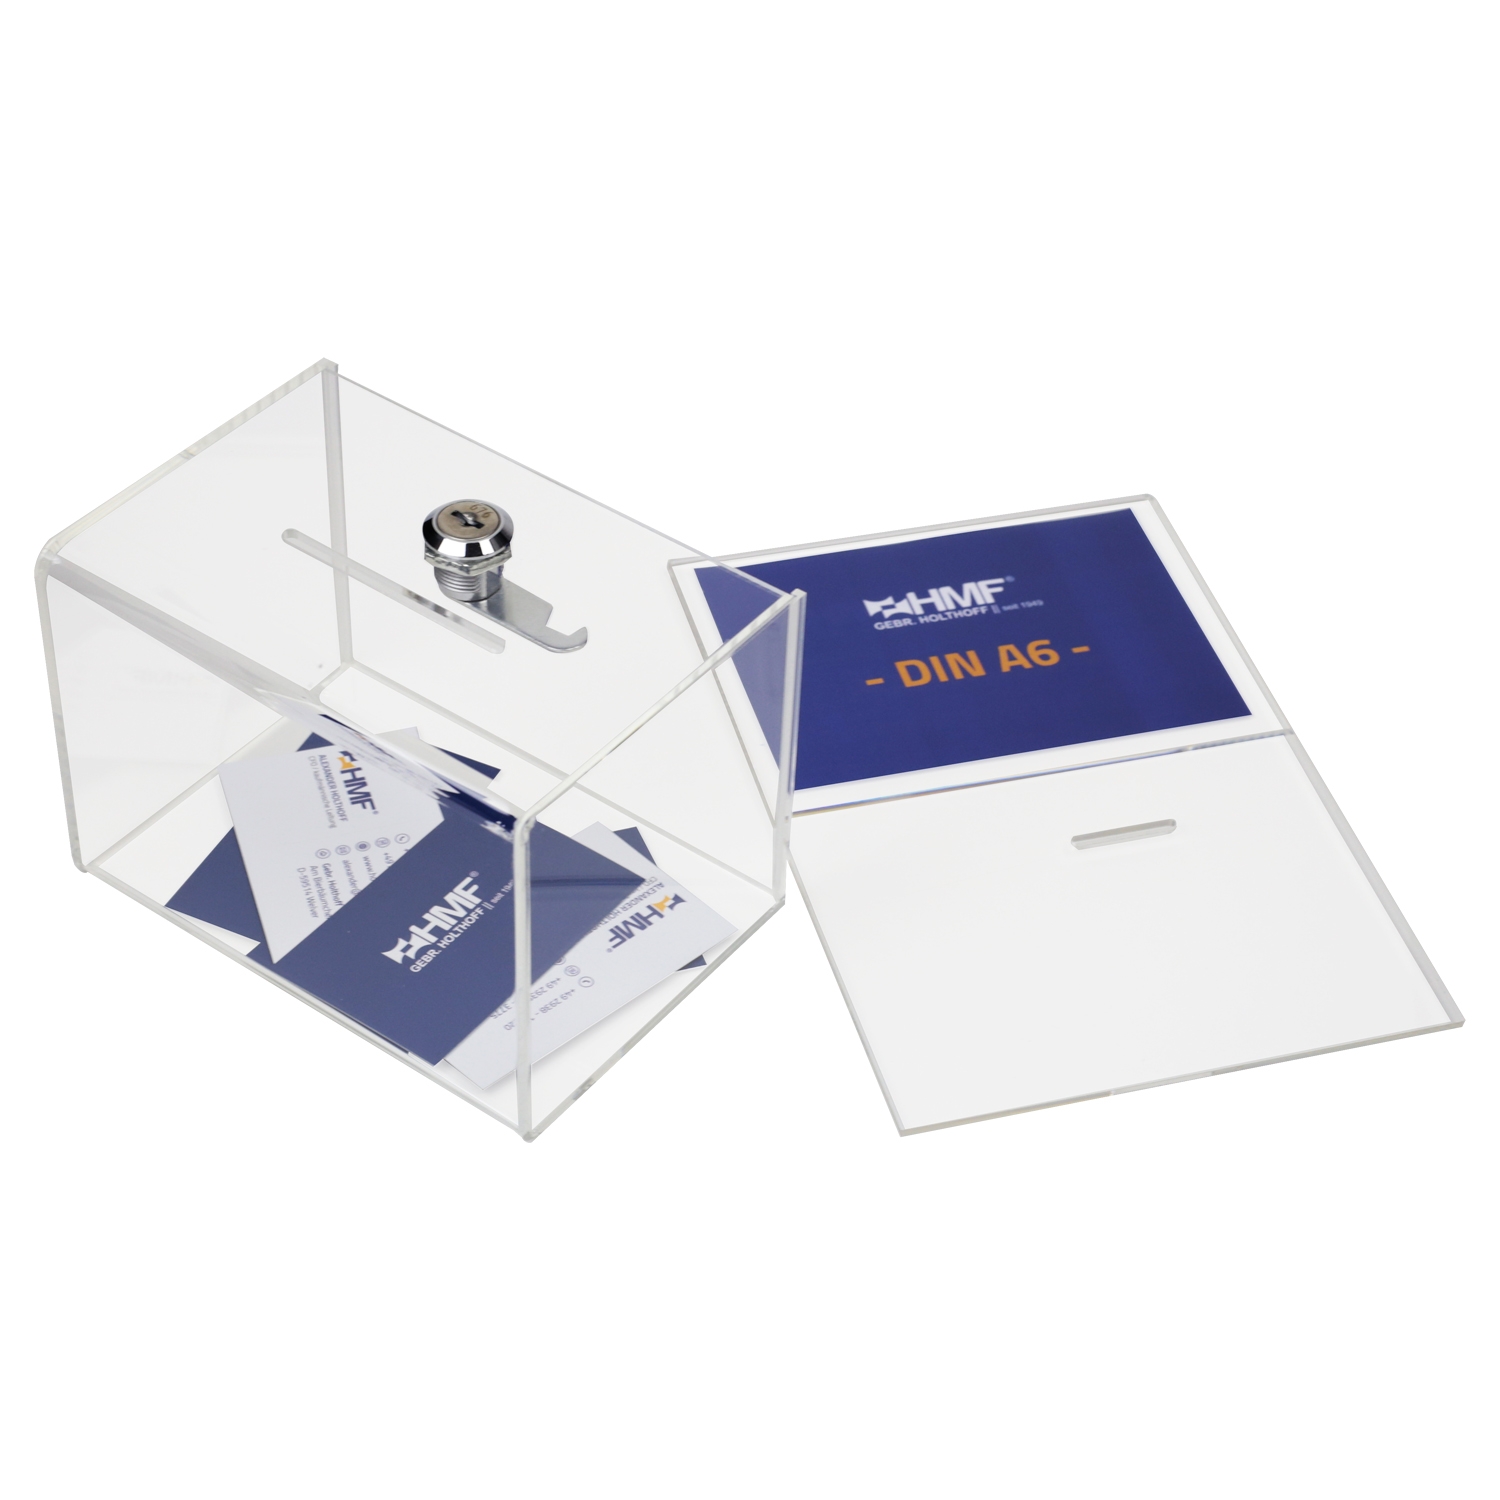 Spendenbox Acryl für DIN A6 Blatteinschub von HMF mit den Maßen 15.5 x 11 x 11 cm